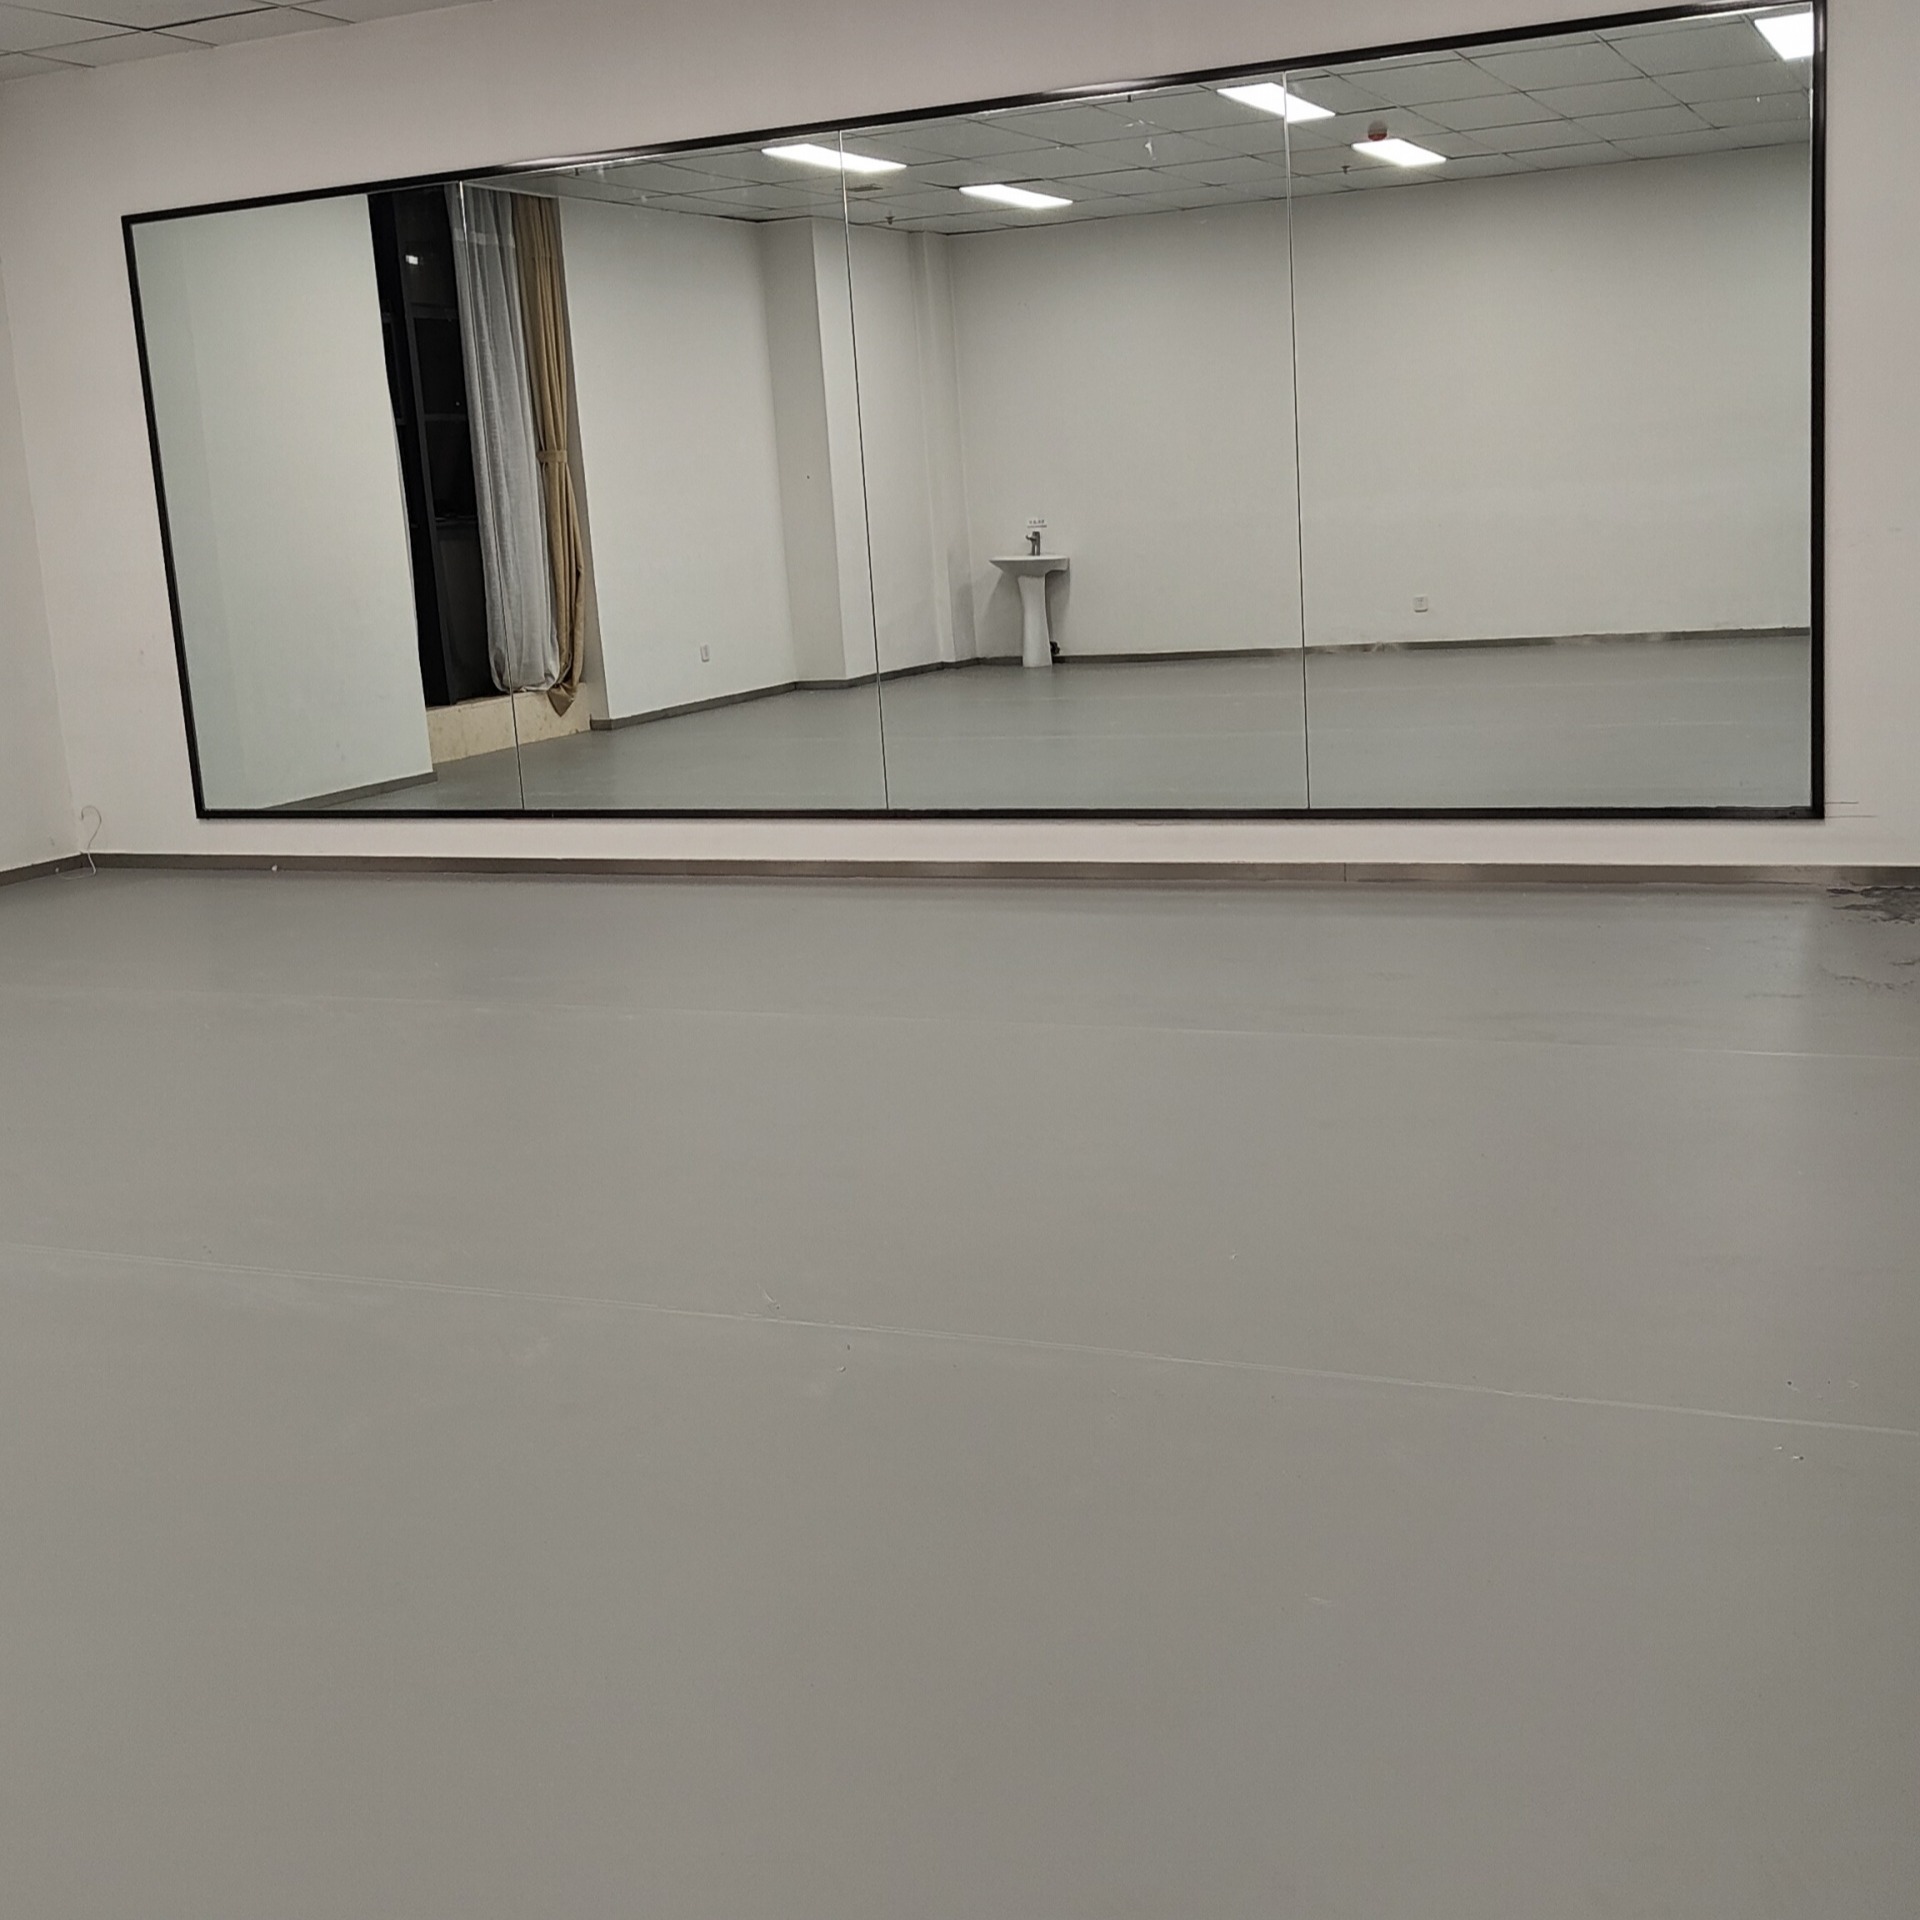 昆明舞蹈教室专用PVC塑胶地板厂家 -曼纳奇舞蹈教室专用PVC地板 - 昆明pvc地板-昆明pvc地板批发地板